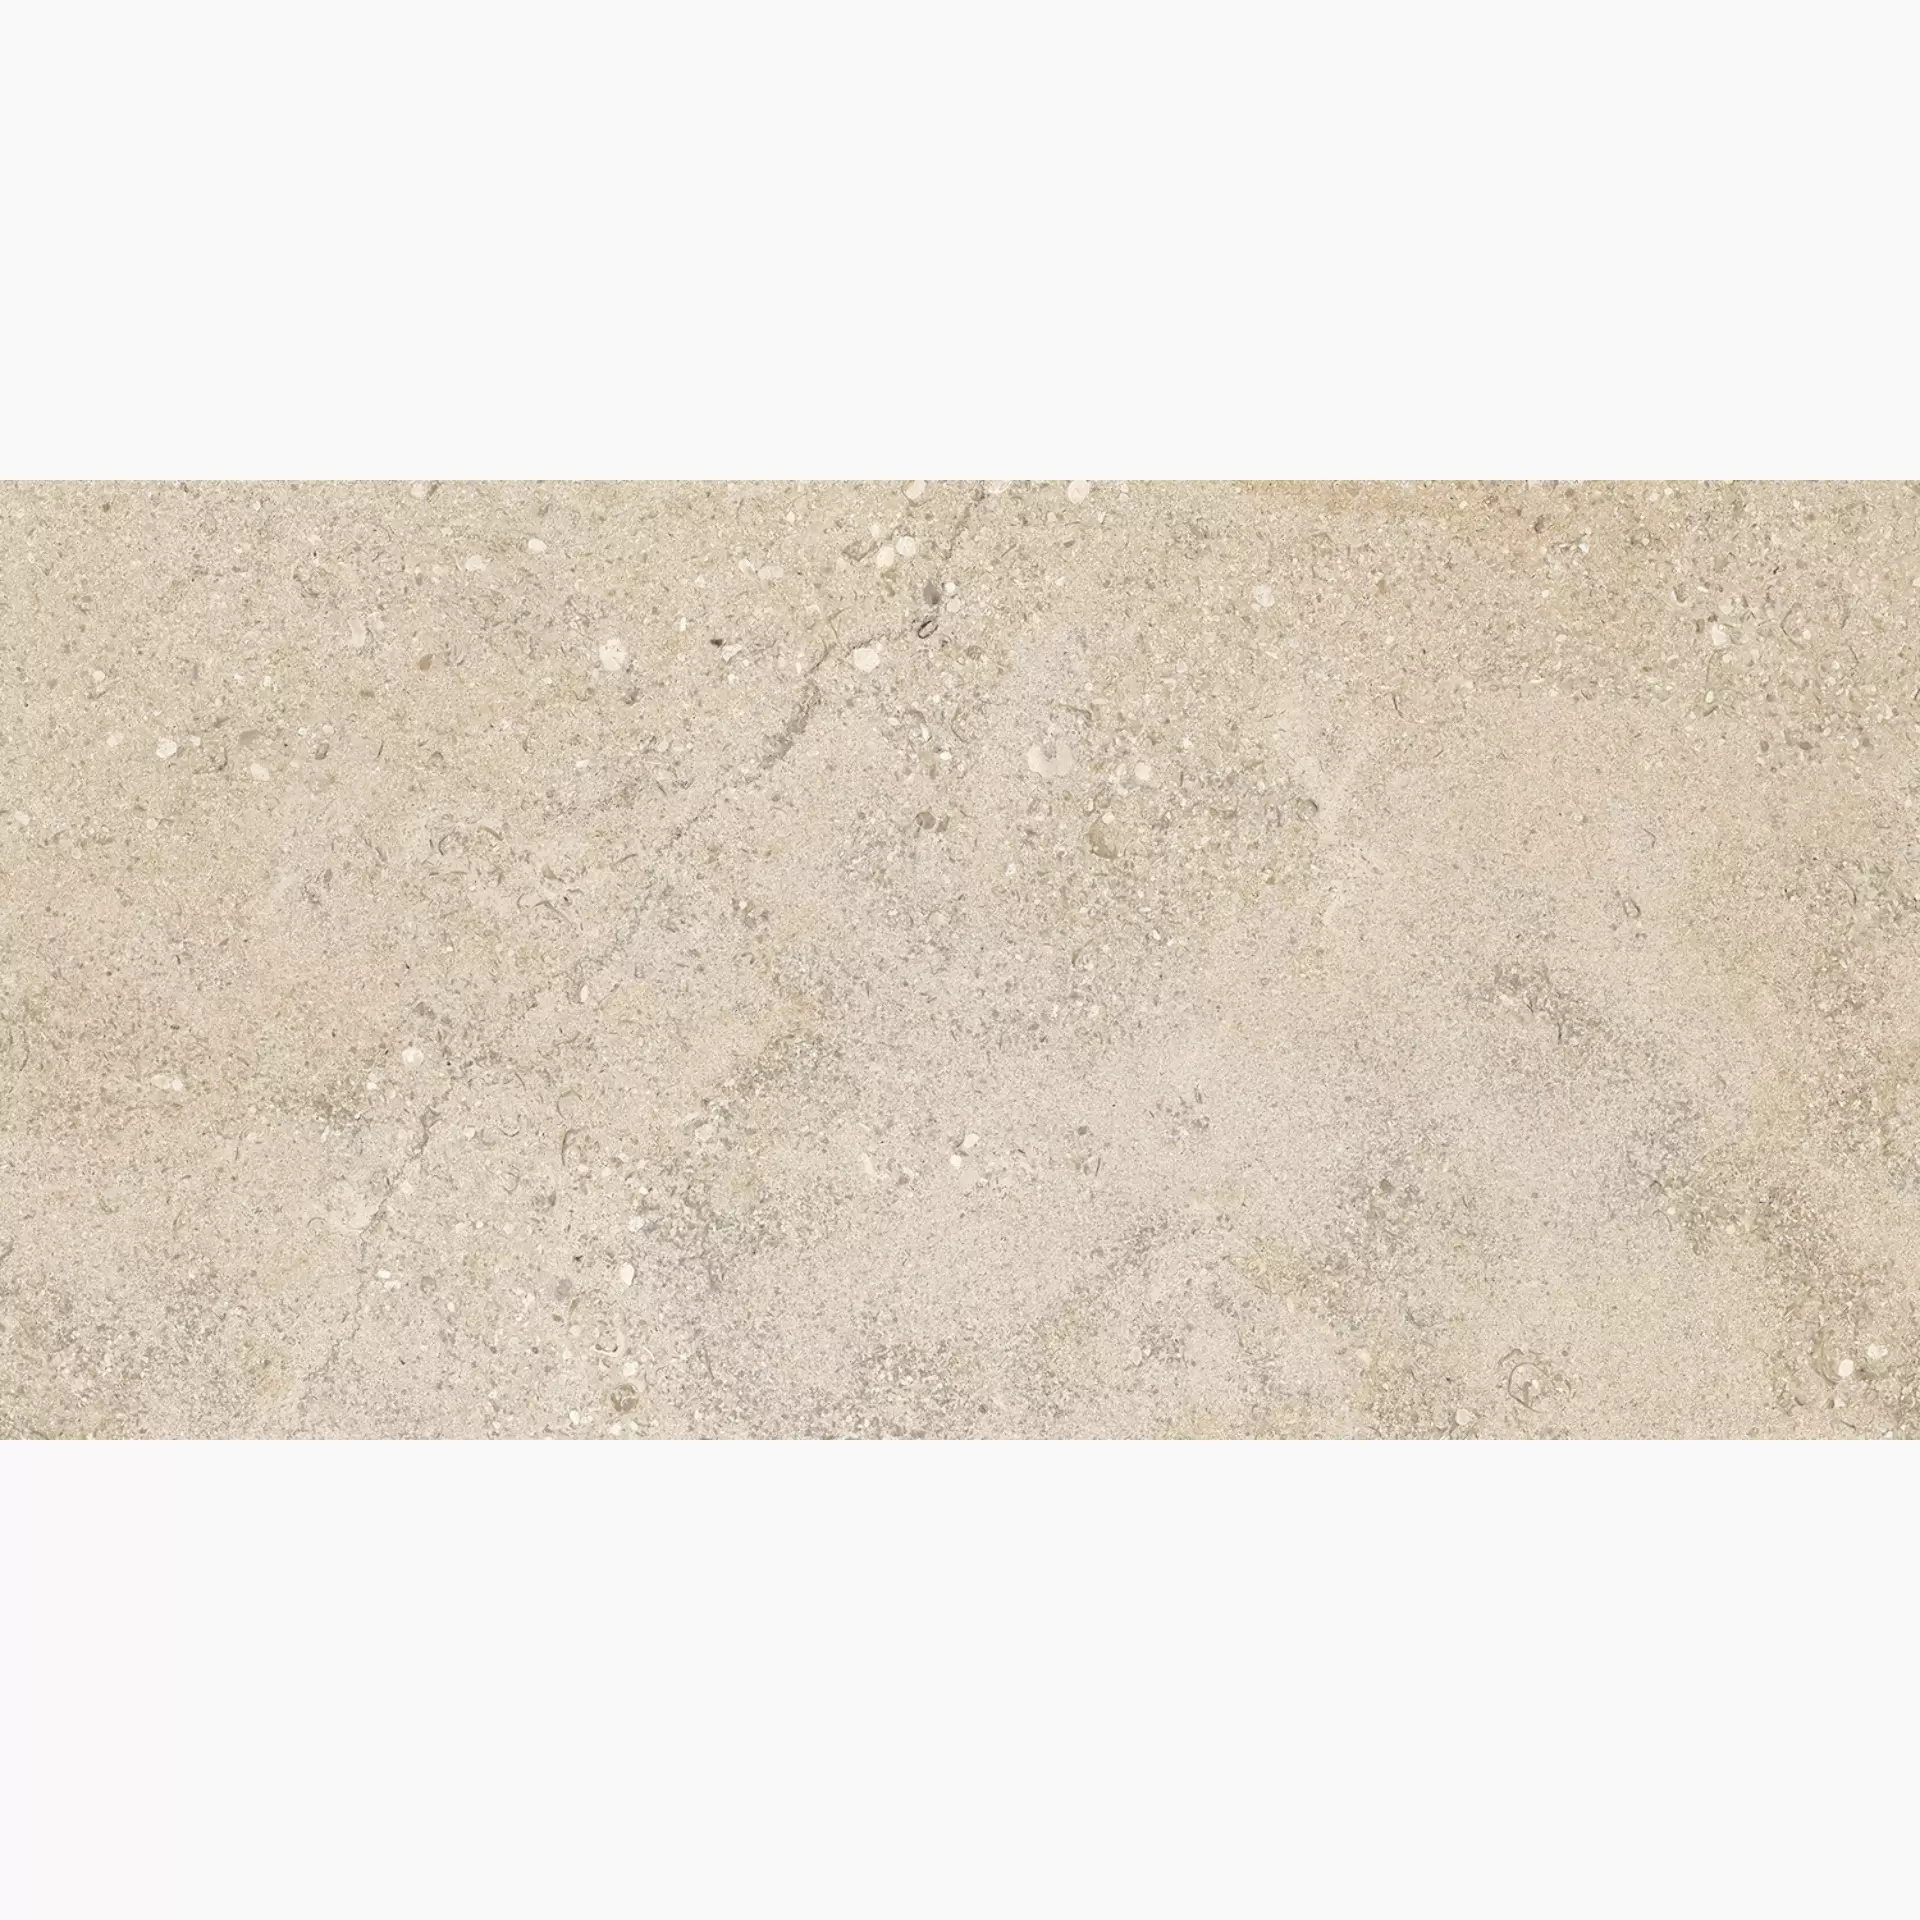 Ragno Kalkstone Sand Strutturato RAJQ strutturato rectified 9,5mm